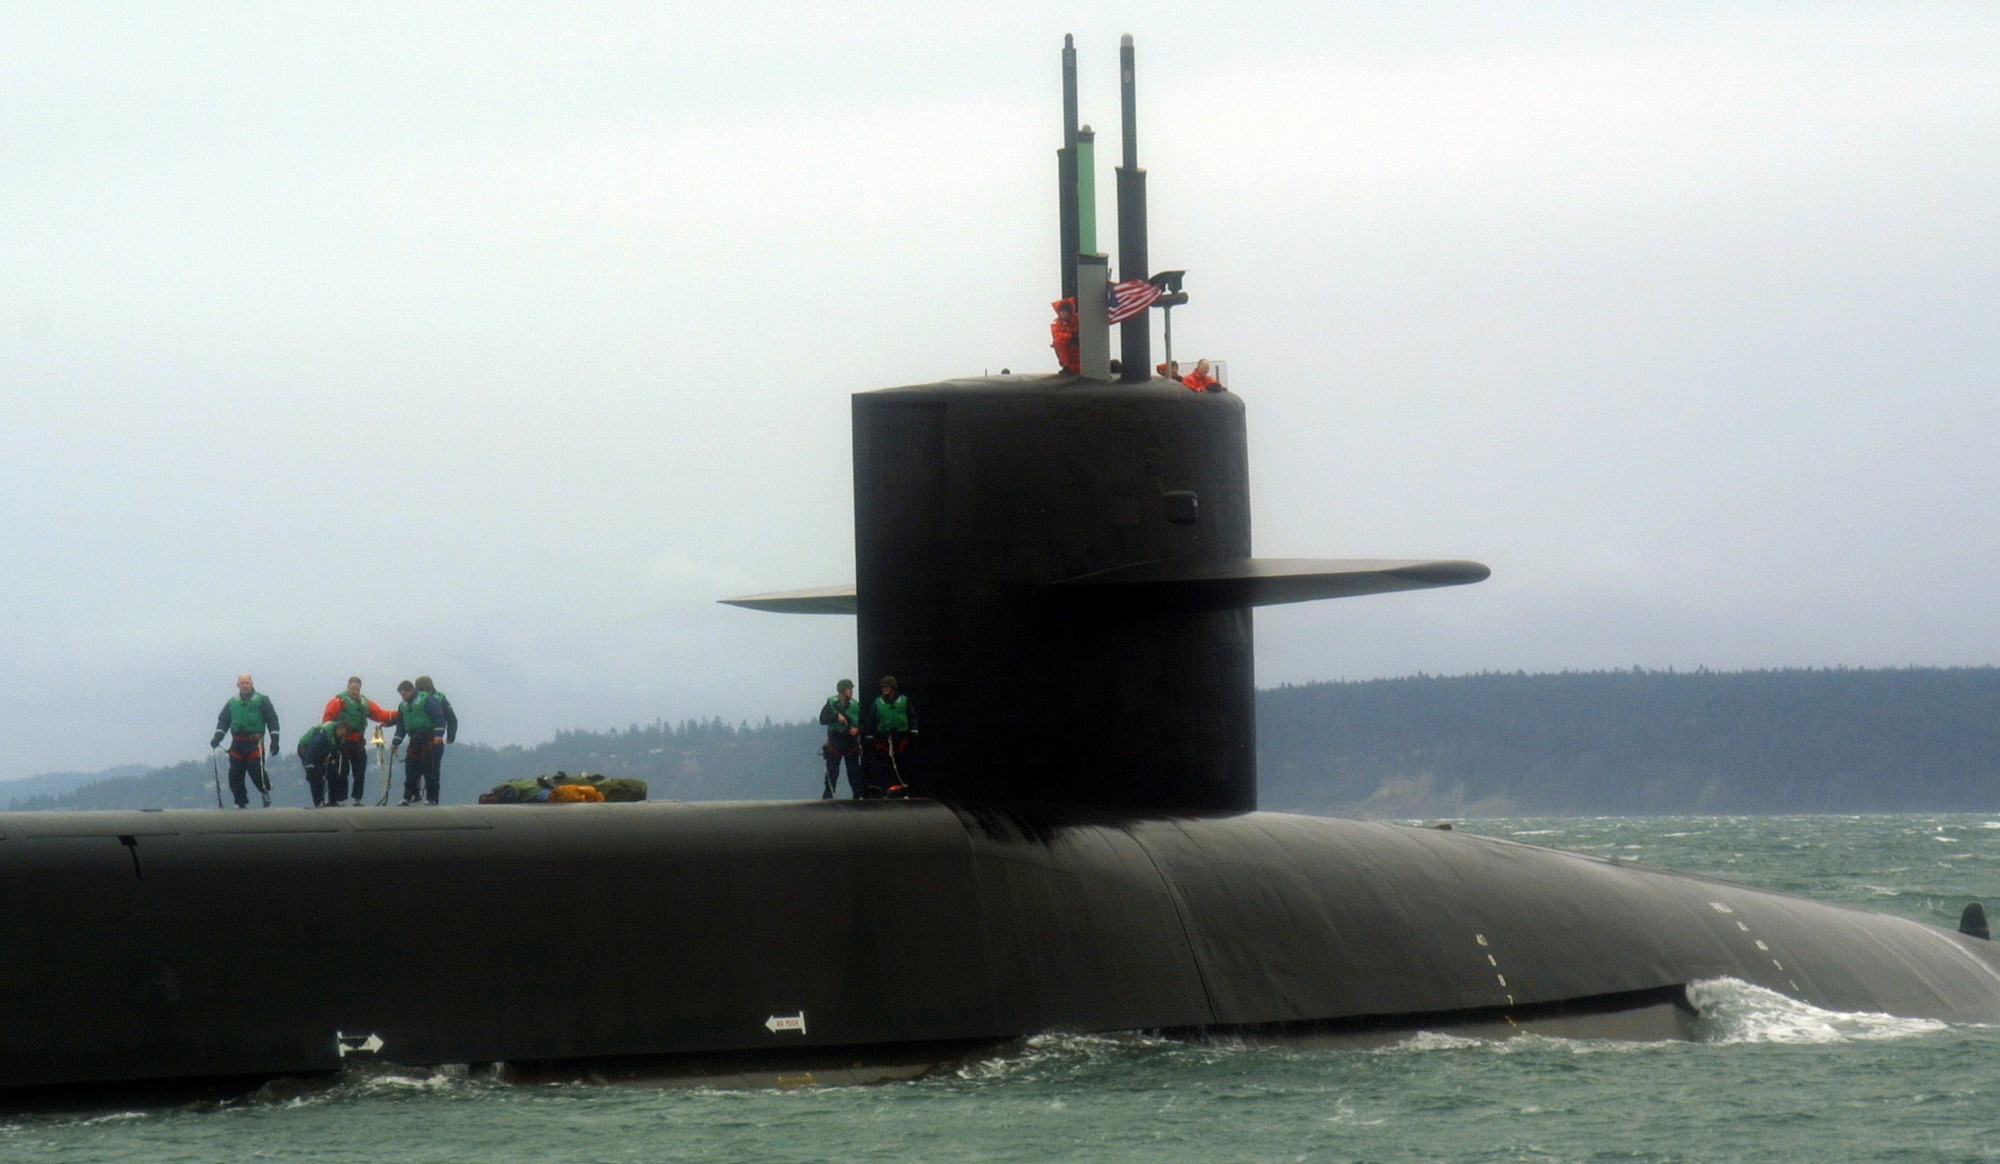 ssgn-726 uss ohio guided missile submarine us navy 2006 49 puget sound washington